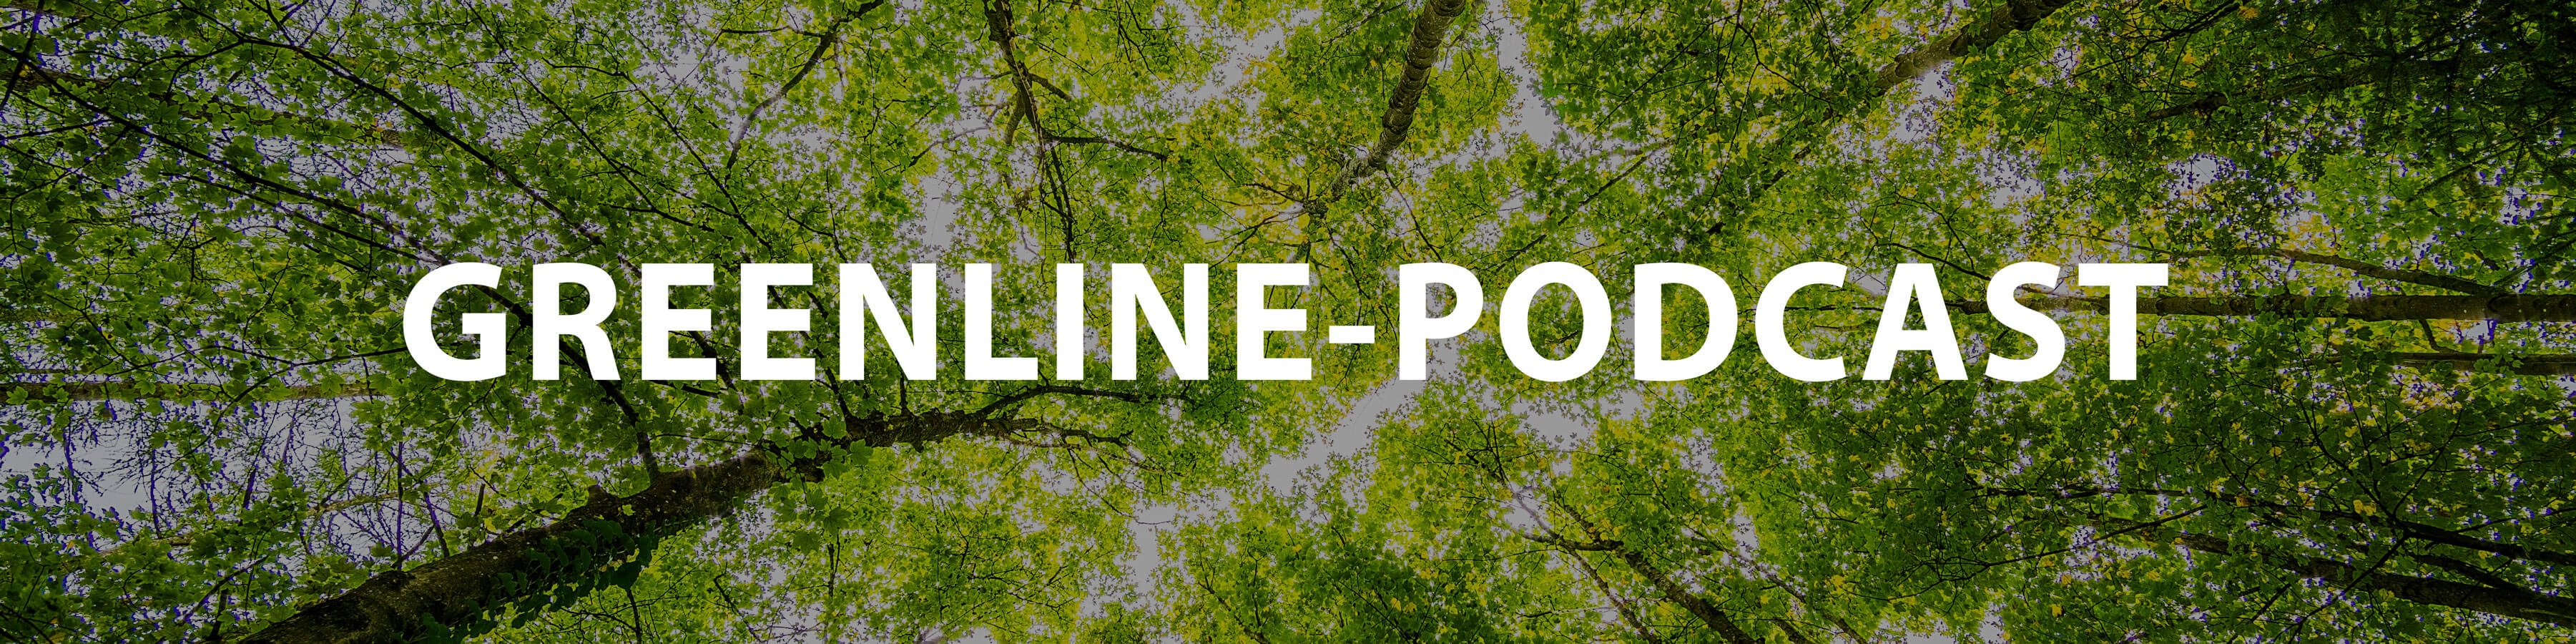 Greenline-Podcast on Pamark Groupin uusi yrityksien vastuullisuutta ja päästöjä käsittelevä keskusteluohjelma